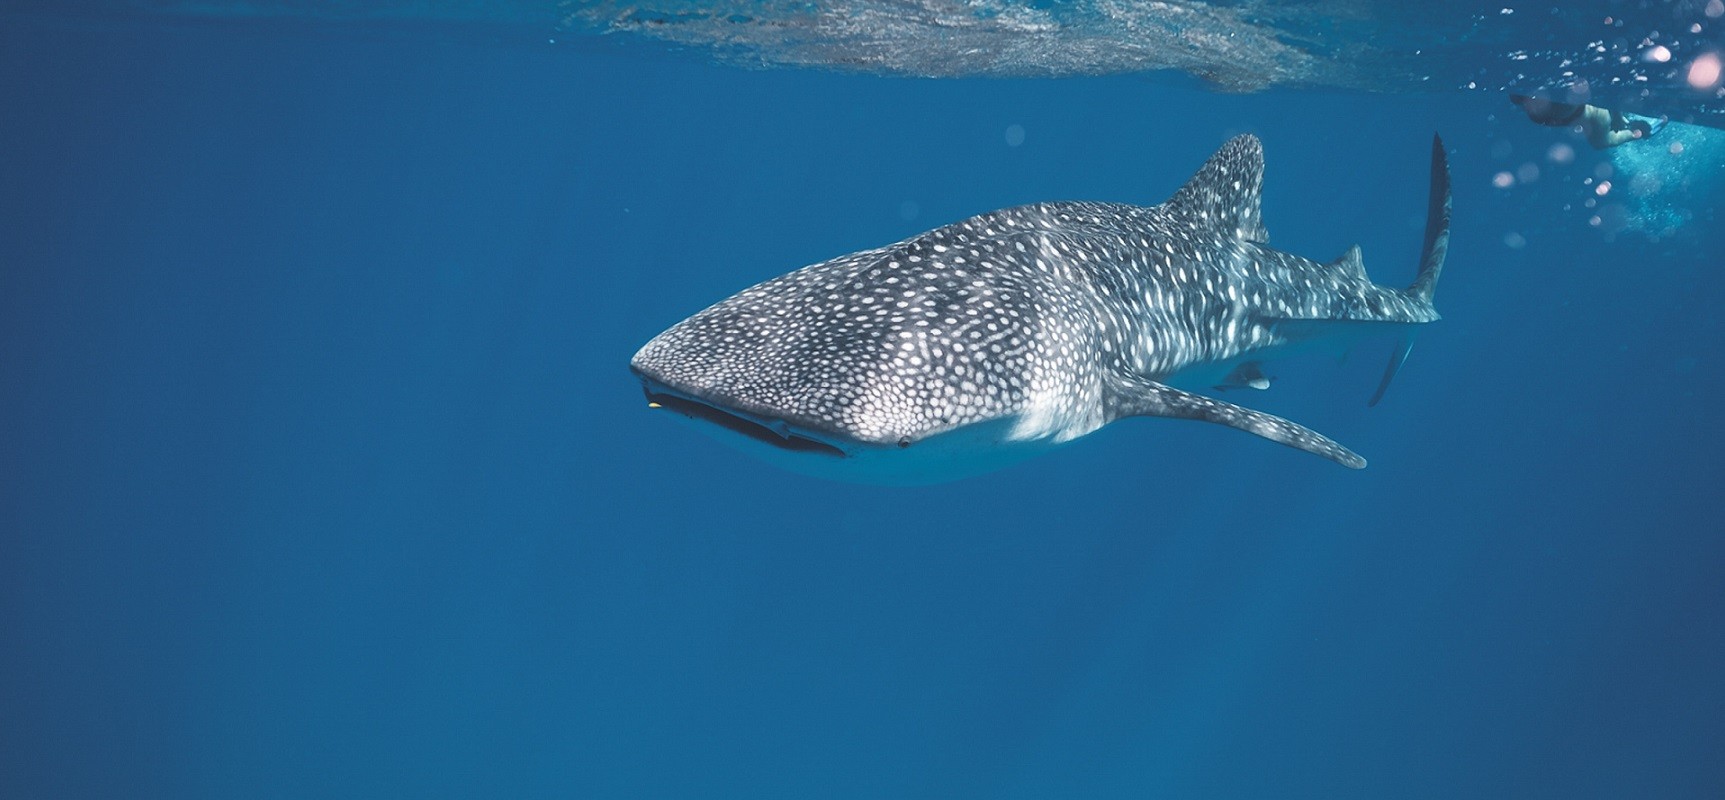 Maldives Liveaboards - Whale shark